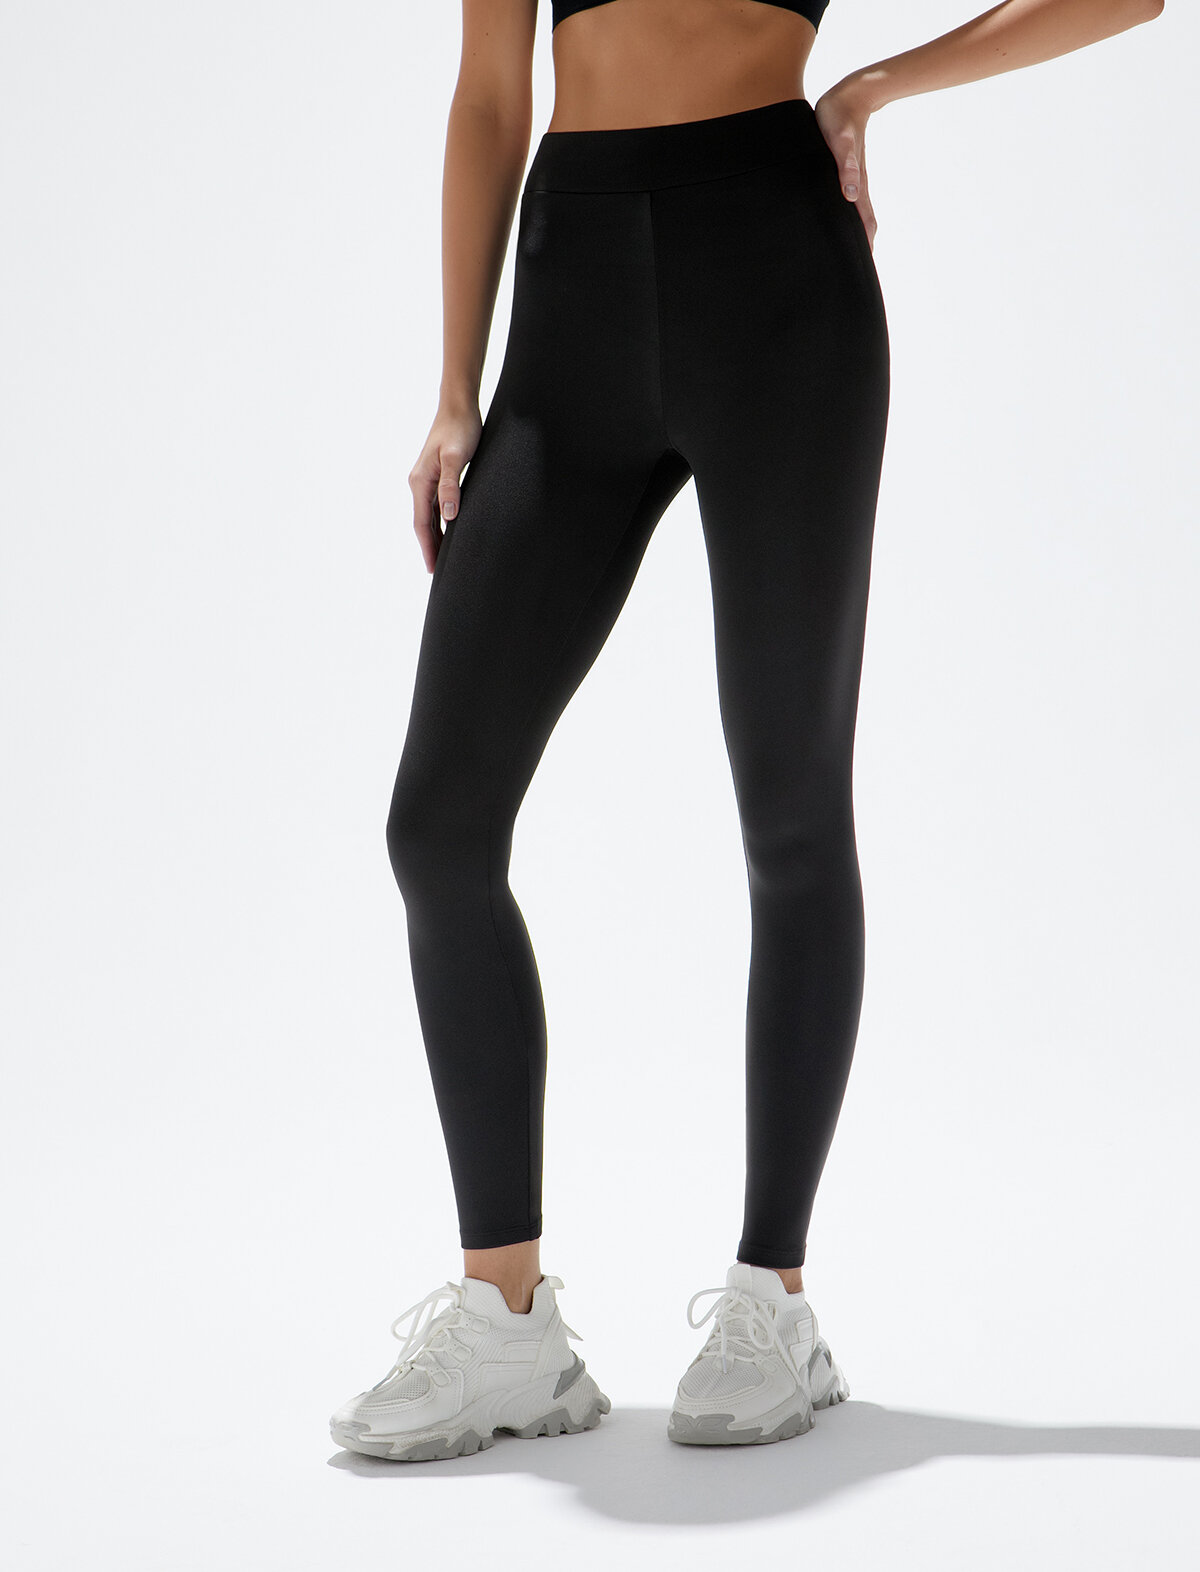 Женские спортивные эластичные леггинсы с высокой посадкой Minimi intimo Bmi_a2911 leggings